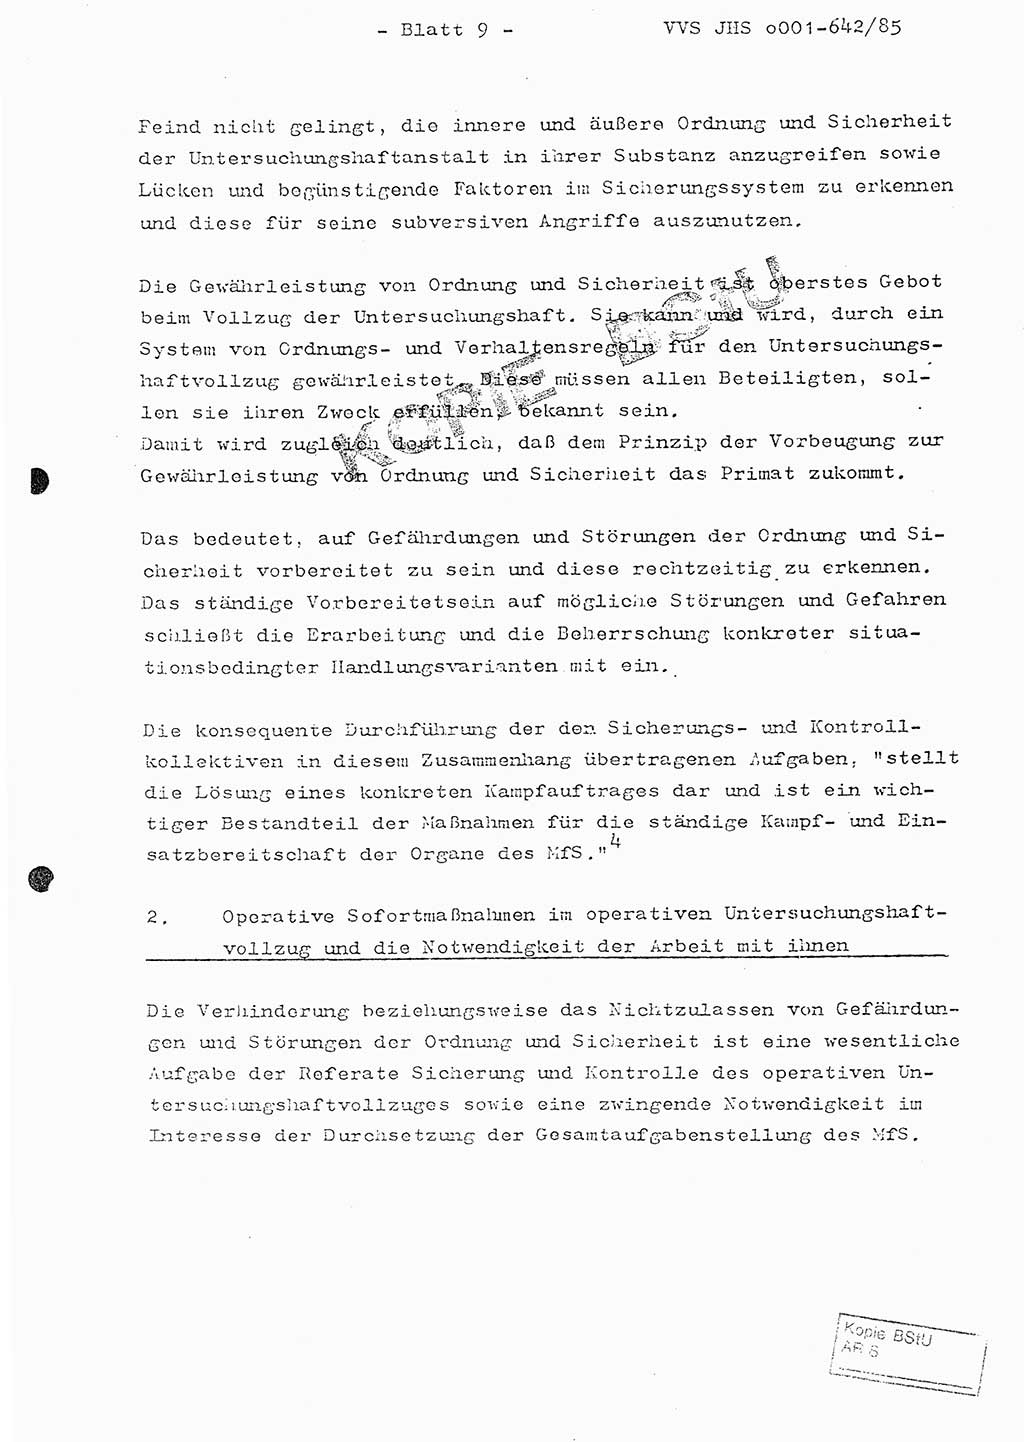 Fachschulabschlußarbeit Oberleutnant Lothar Fahland (Abt. ⅩⅣ), Ministerium für Staatssicherheit (MfS) [Deutsche Demokratische Republik (DDR)], Juristische Hochschule (JHS), Vertrauliche Verschlußsache (VVS) o001-642/85, Potsdam 1985, Blatt 9 (FS-Abschl.-Arb. MfS DDR JHS VVS o001-642/85 1985, Bl. 9)